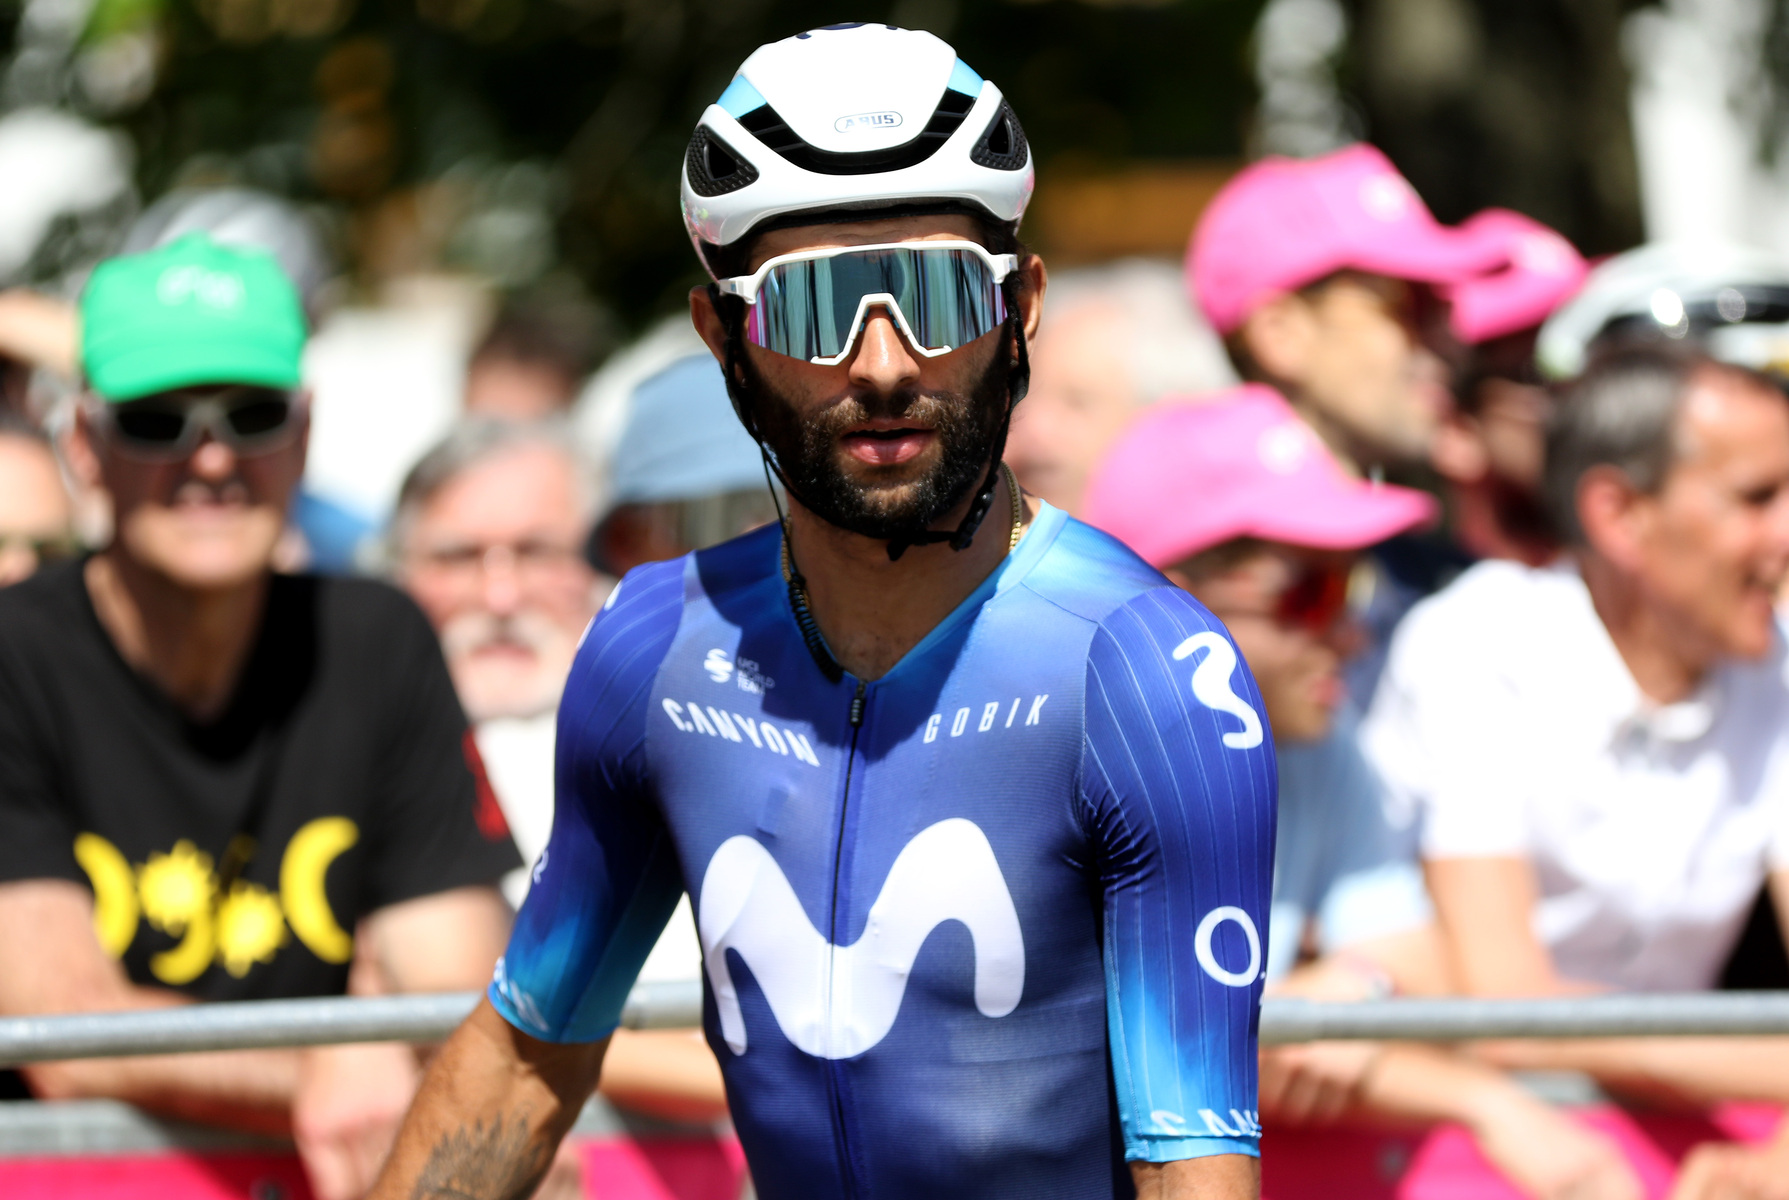 Fernando Gaviria sufrió fractura de clavícula en el Tour de Gran Bretaña.